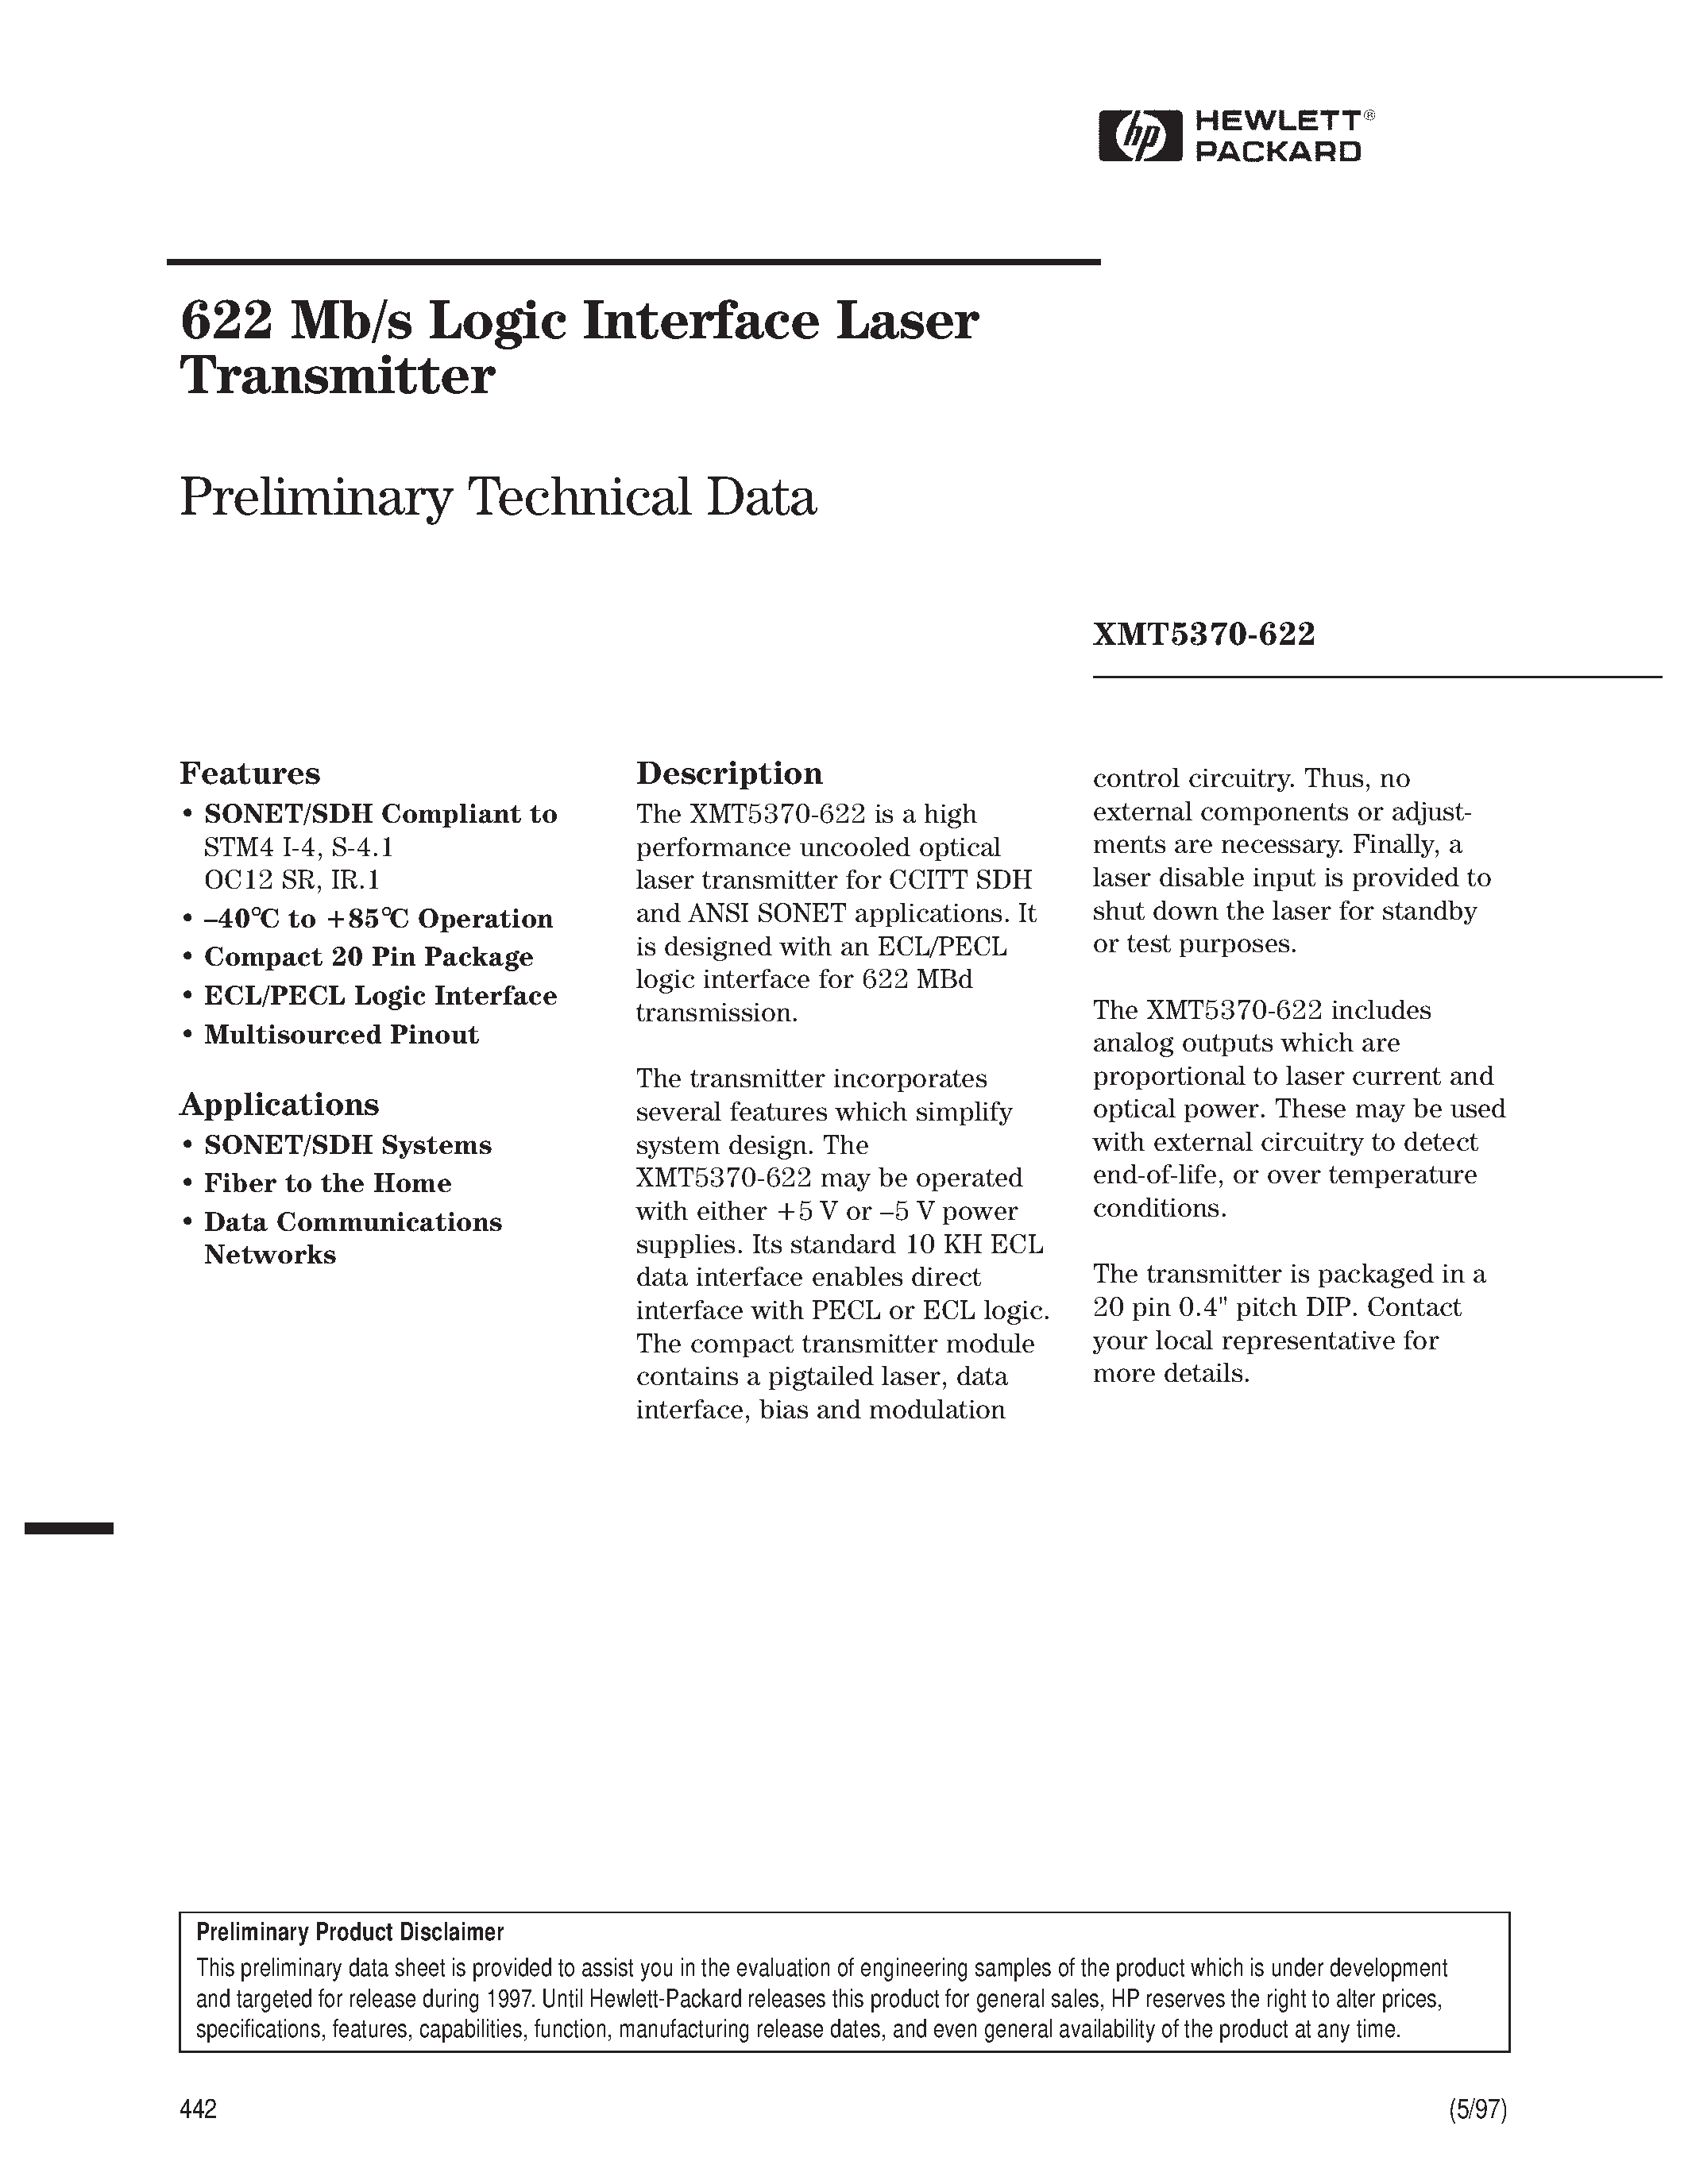 Datasheet XMT5360-155 - 622 Mb/s Logic Interface Laser Transmitter page 1